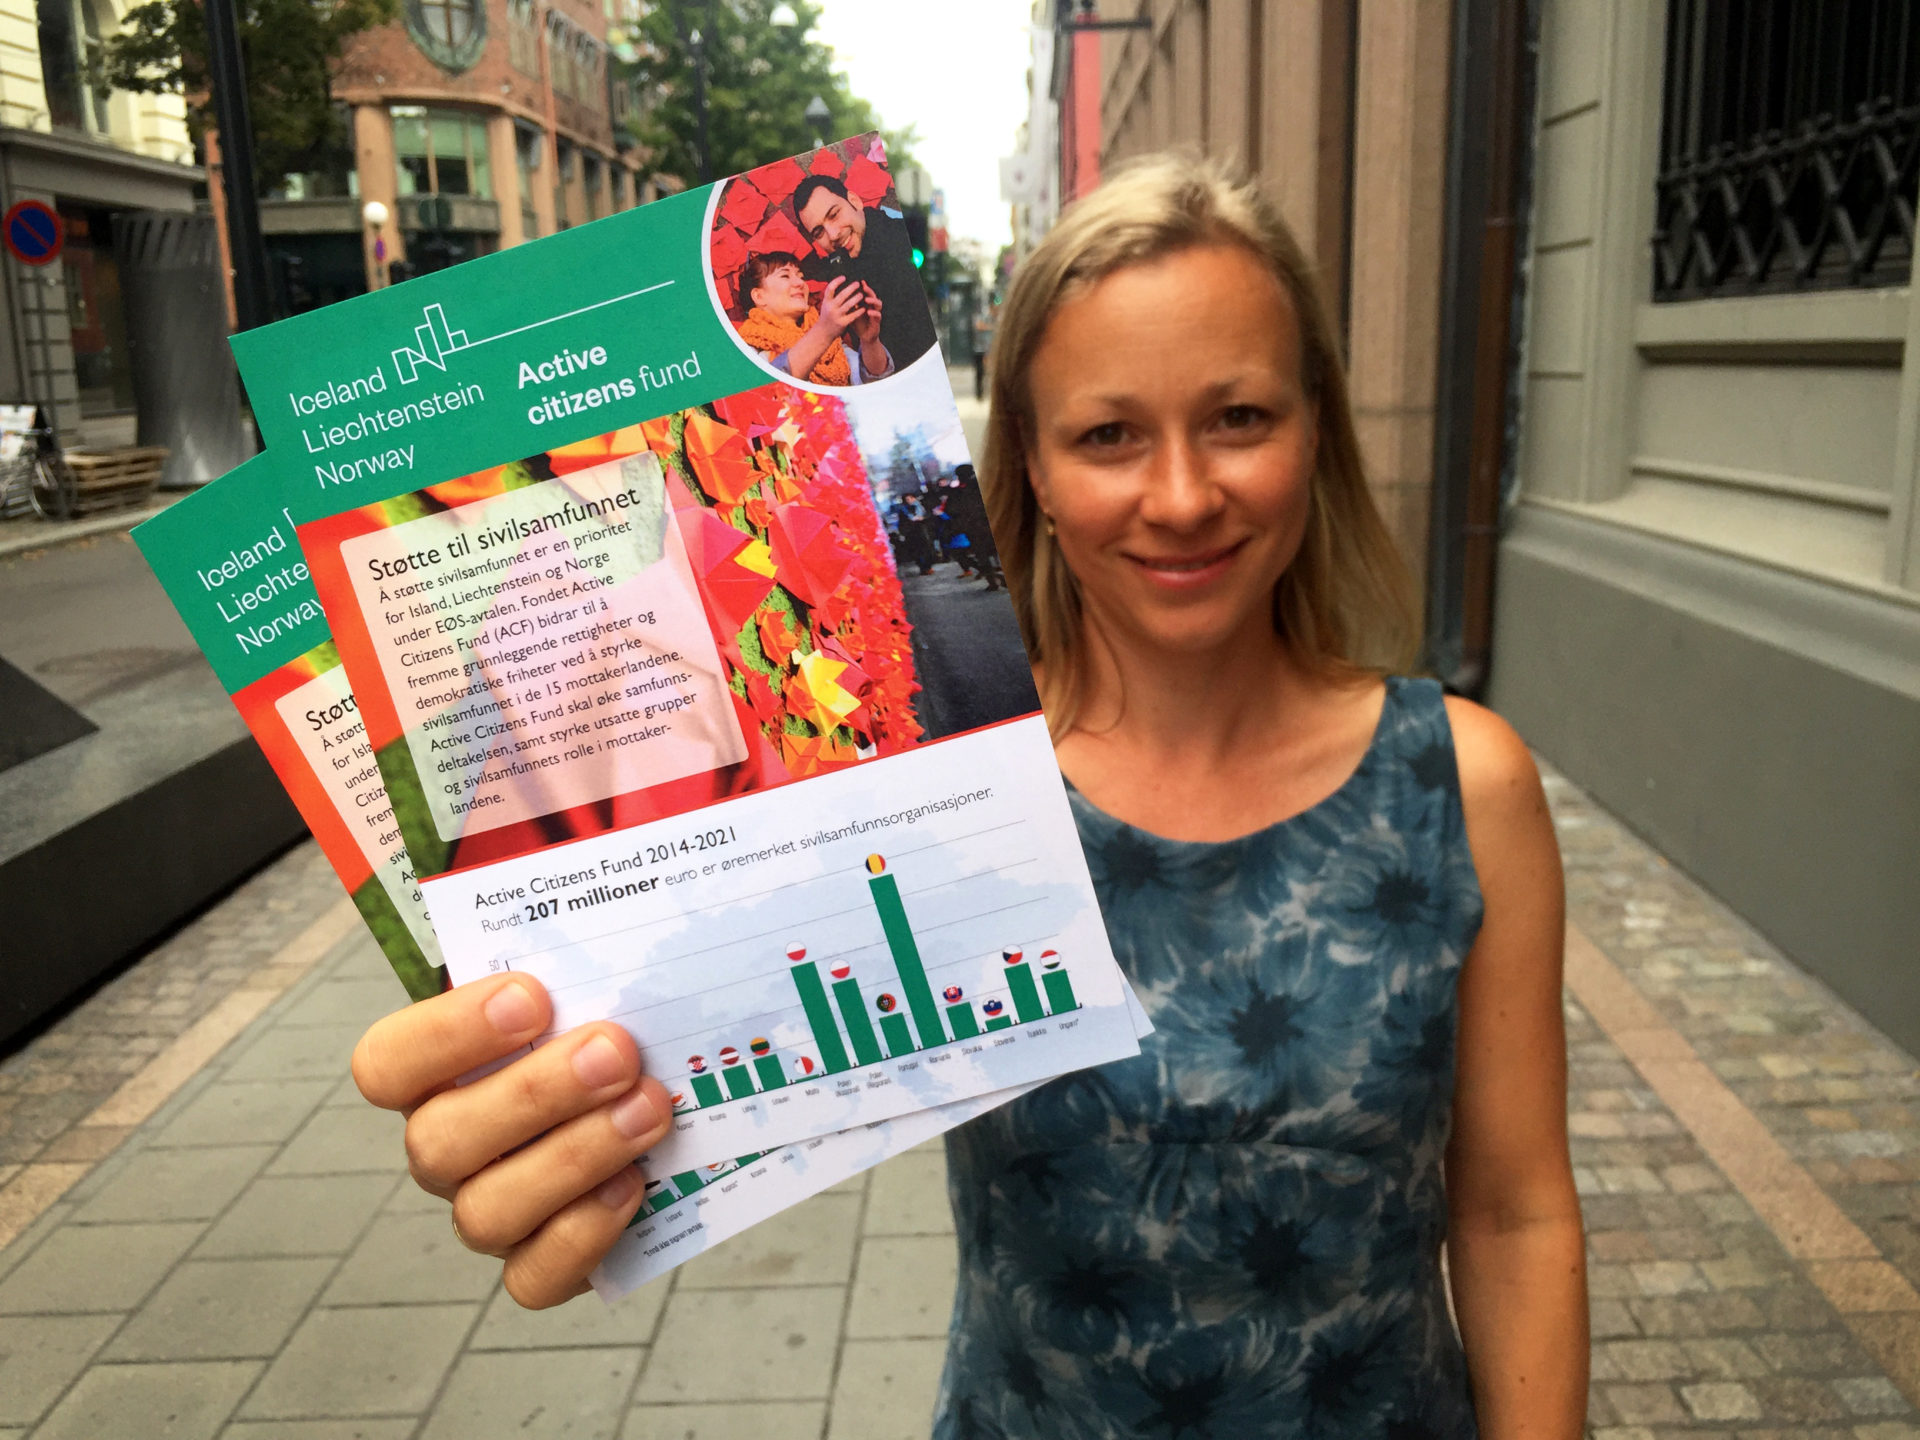 Kvinne fra sivilsamfunnet holder opp flyers om Active Citizens Fund